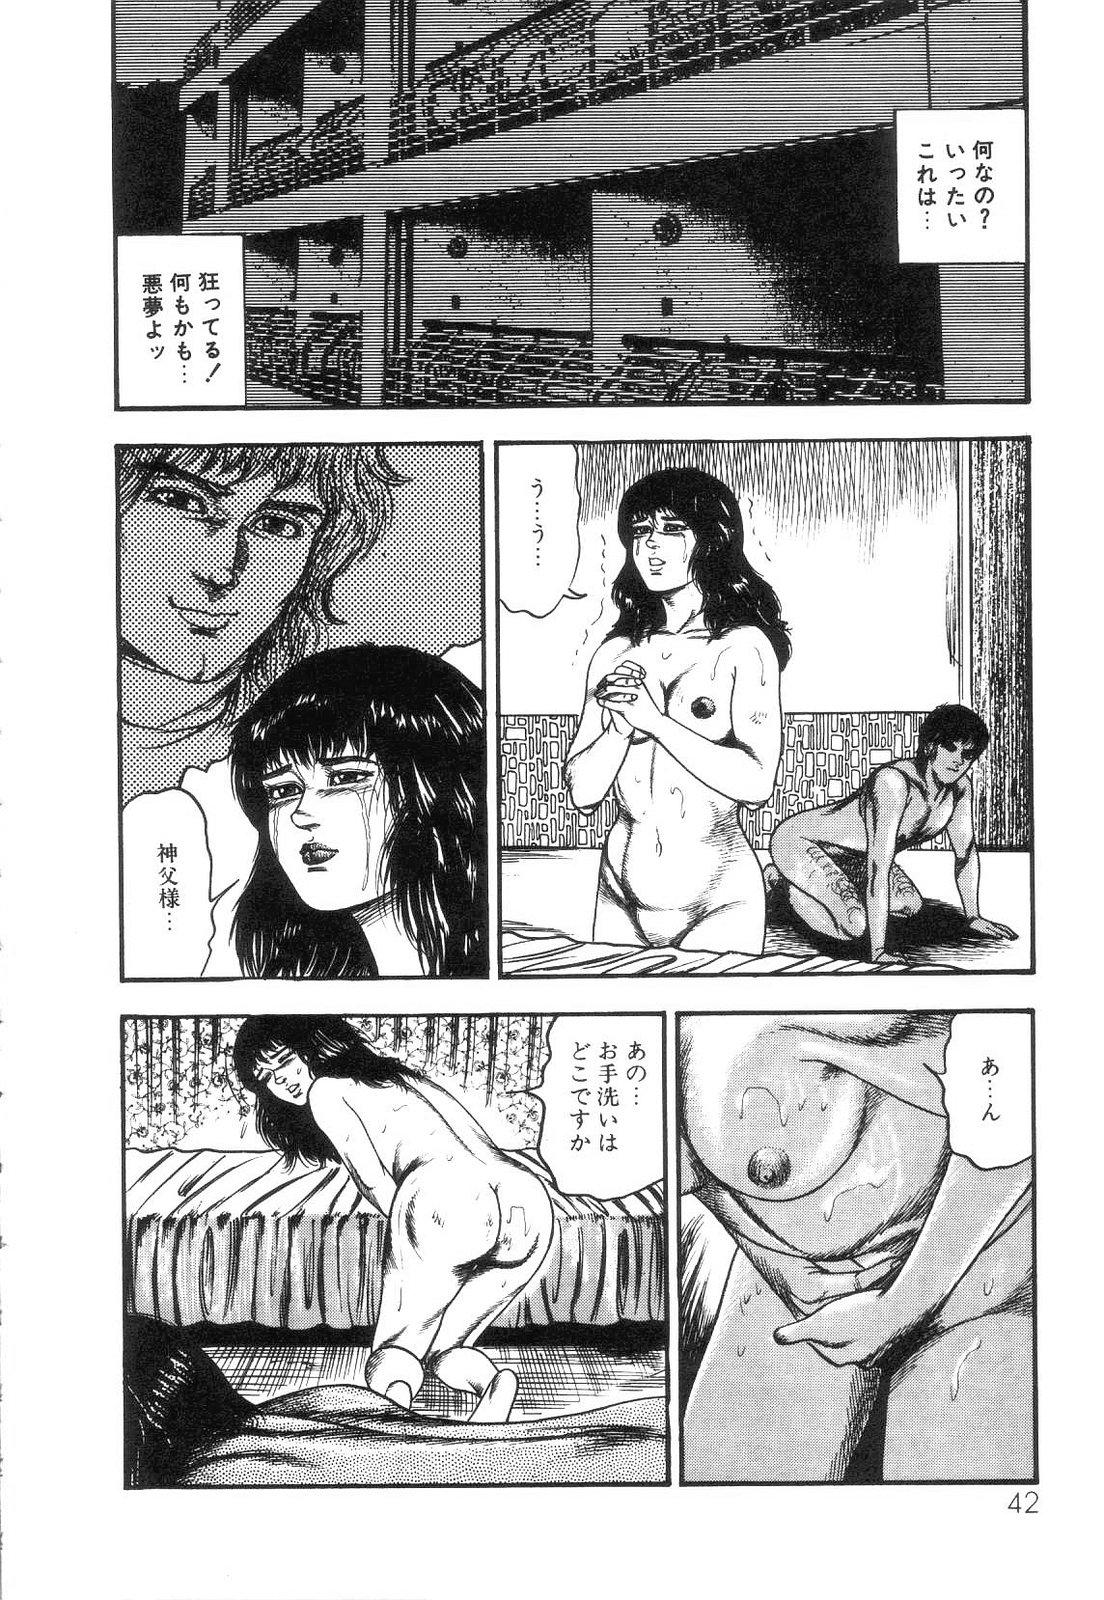 Shiro no Mokushiroku Vol. 4 - Bichiku Karen no Shou 43